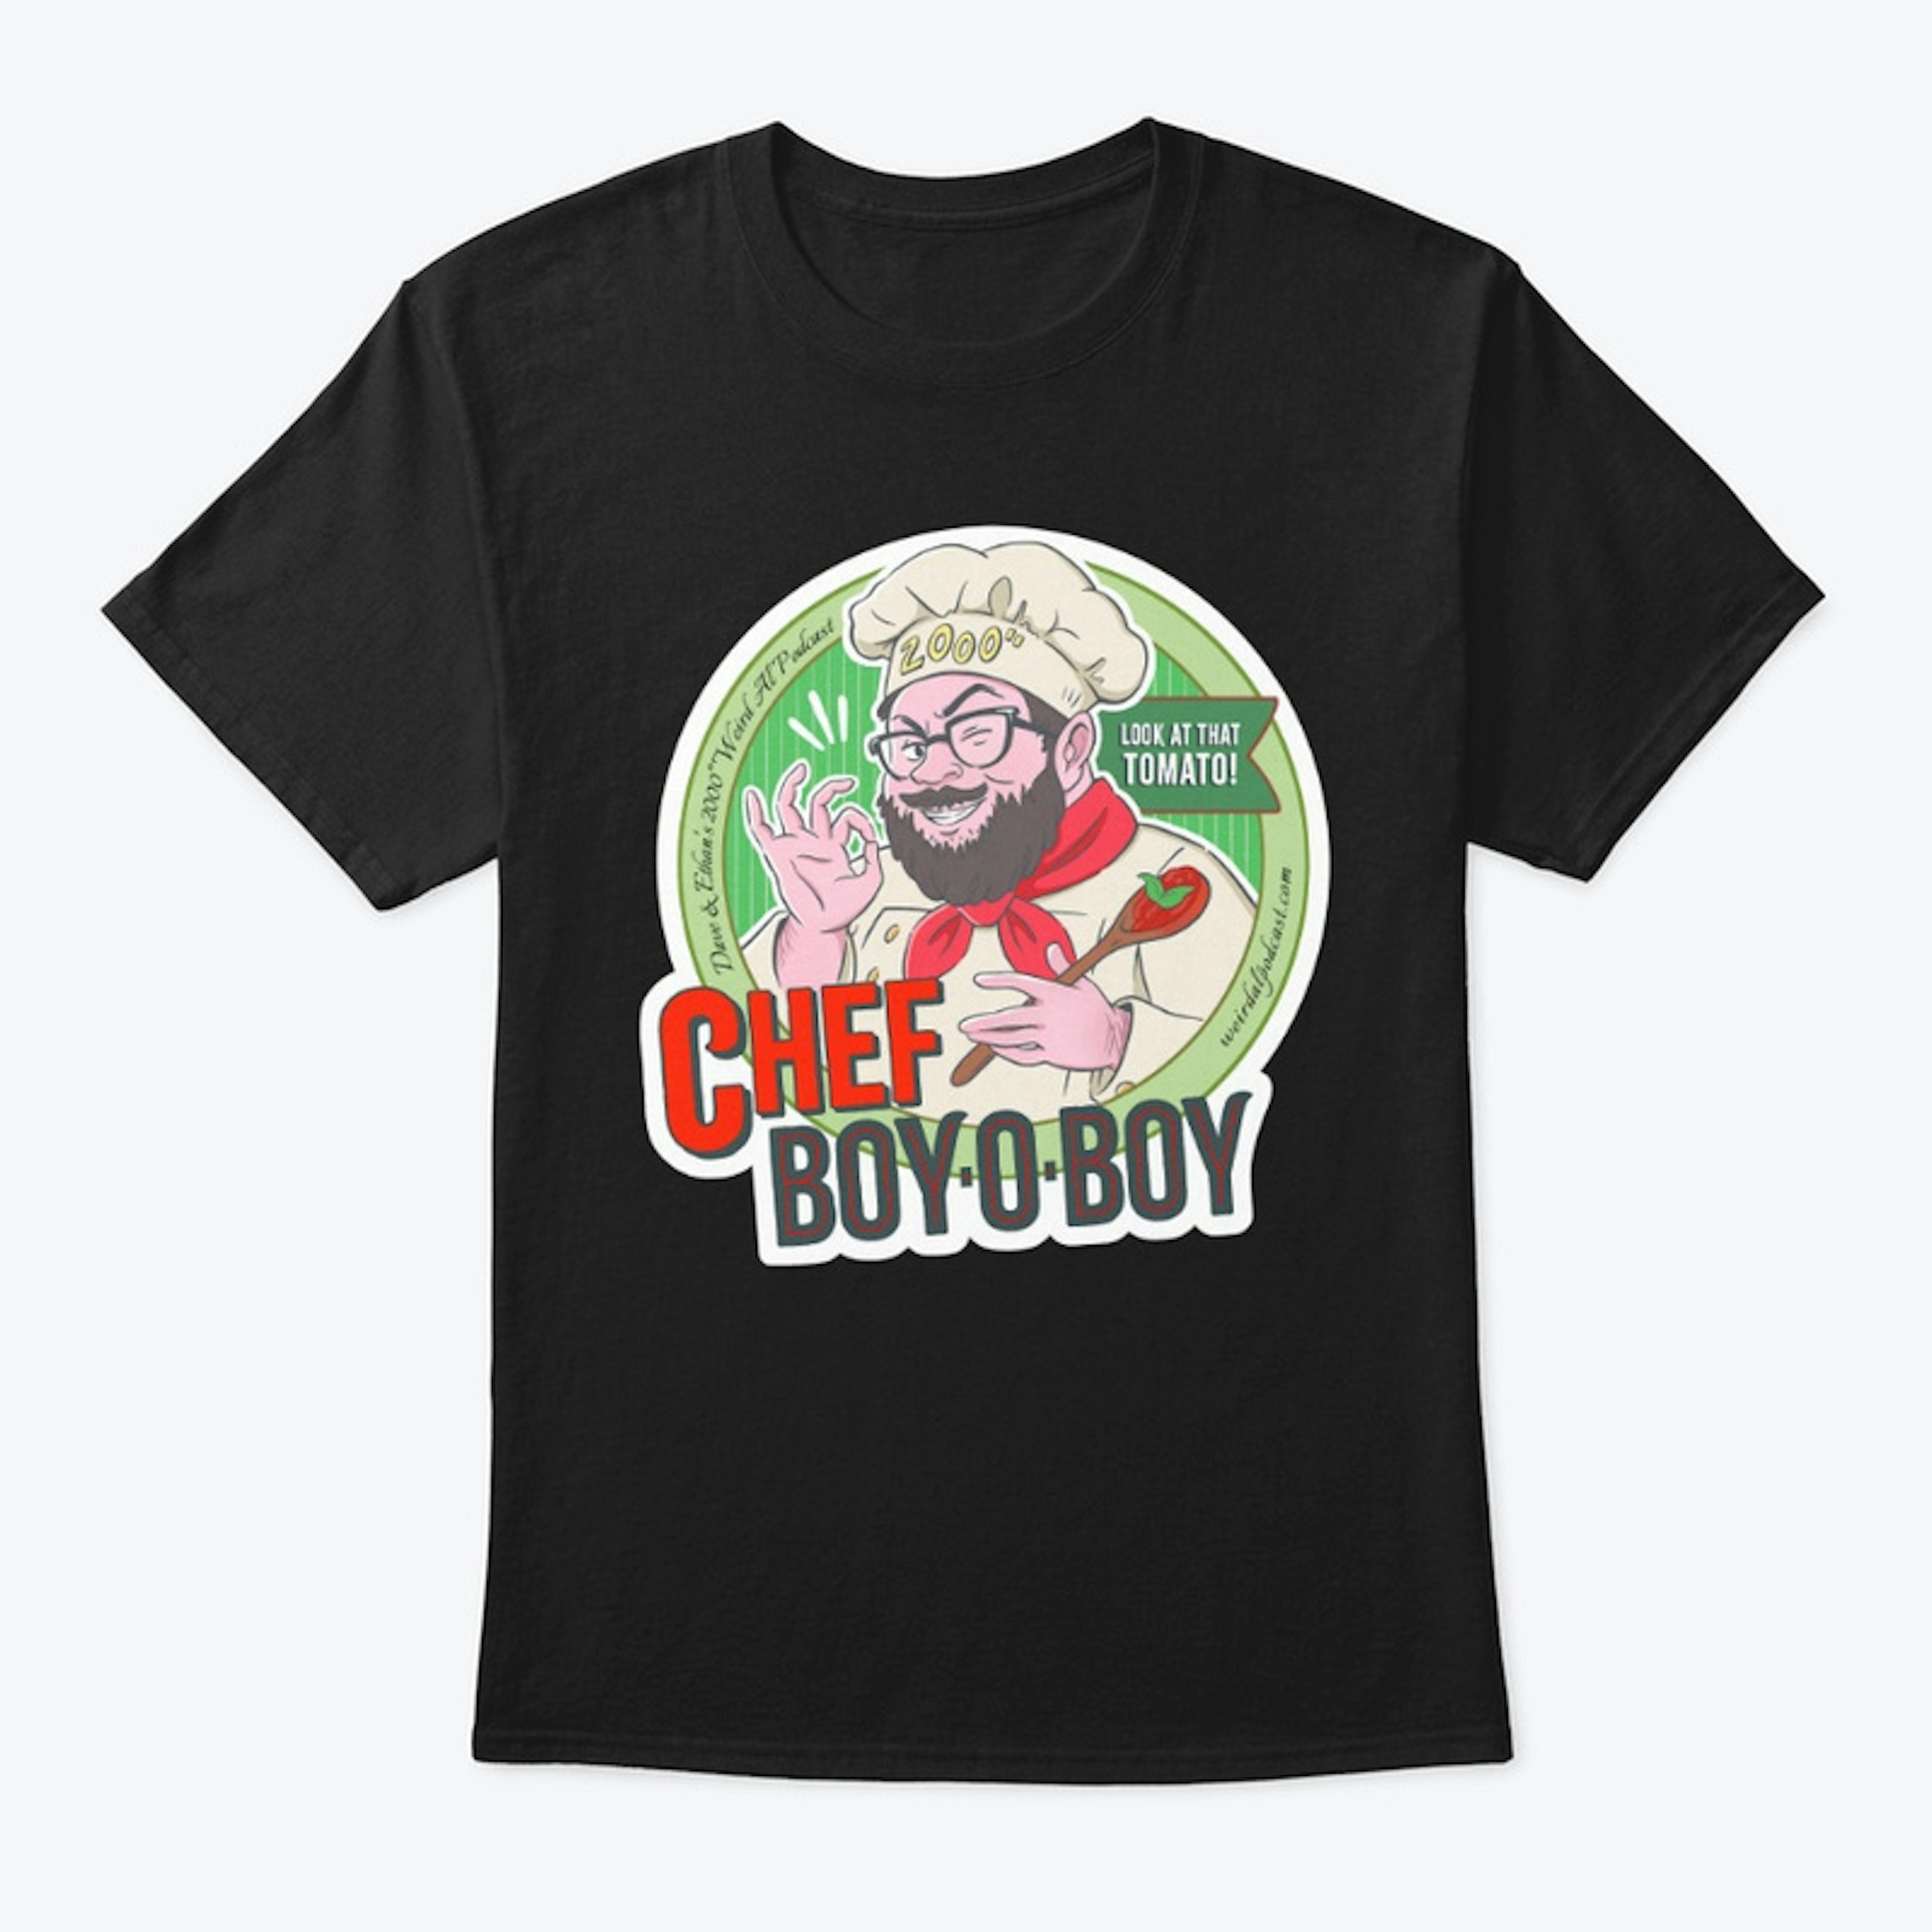 Chef Boy-O-Boy